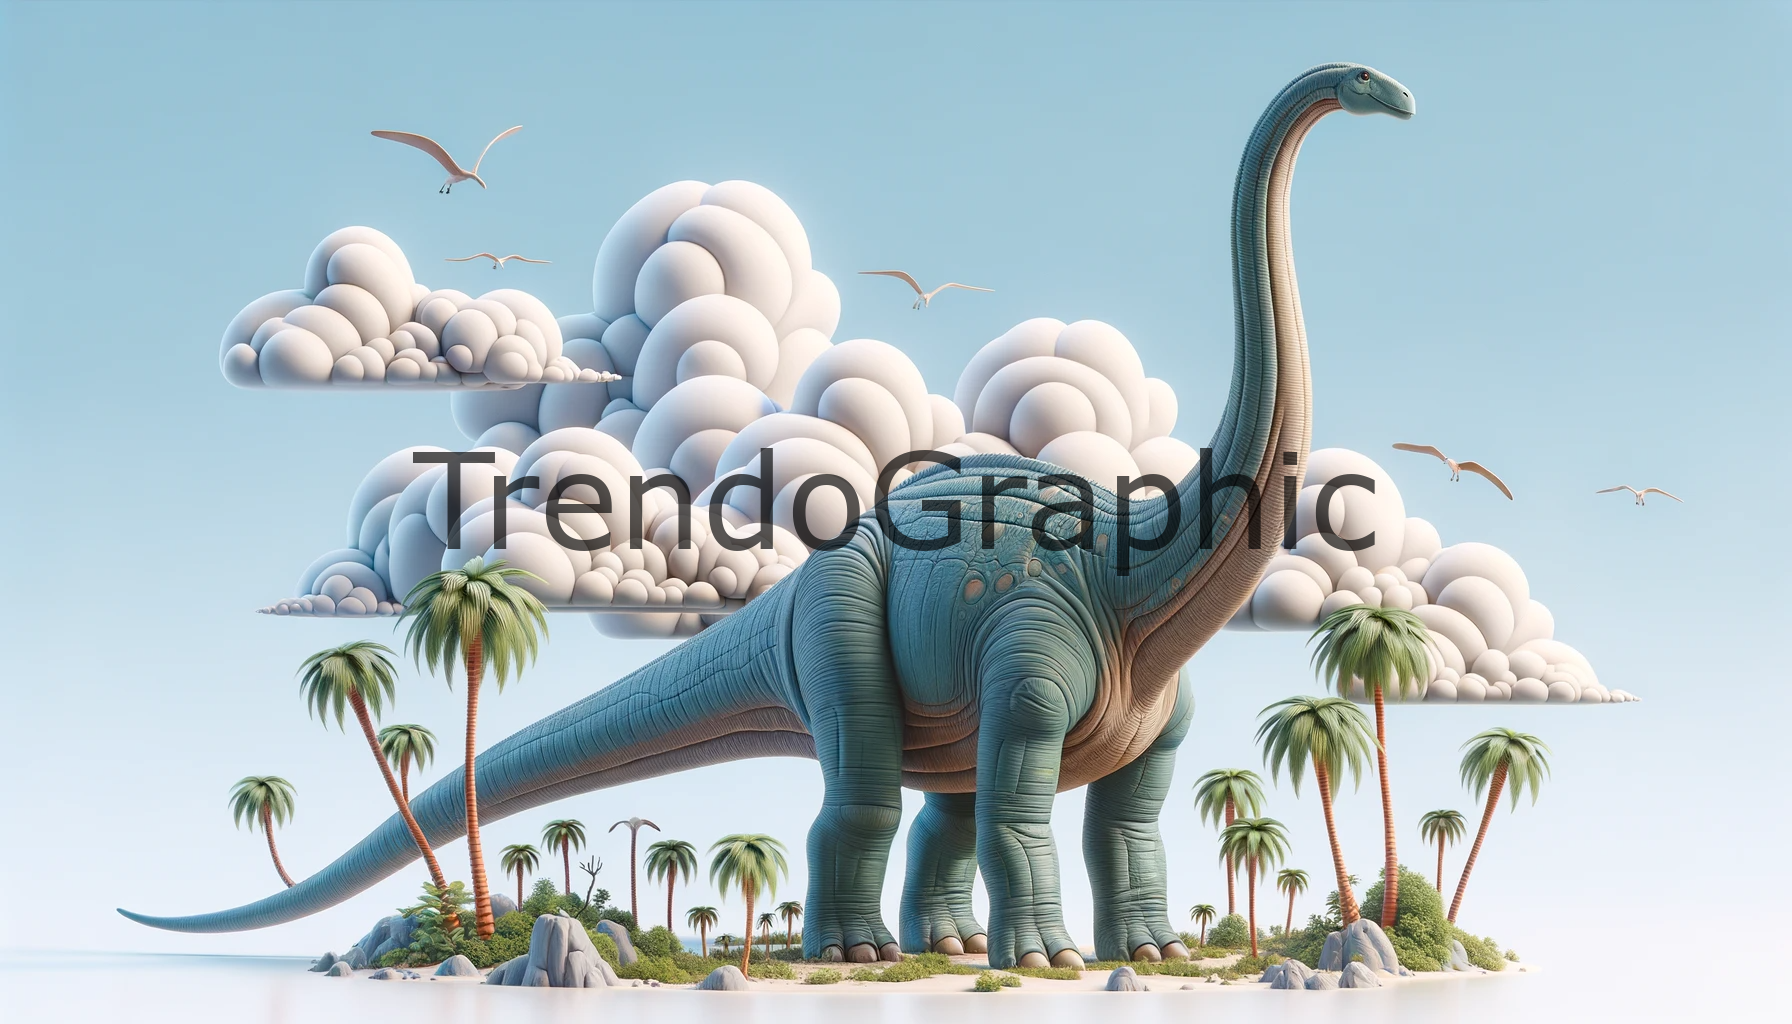 Brachiosaurus Grandeur: The Skyward Reach